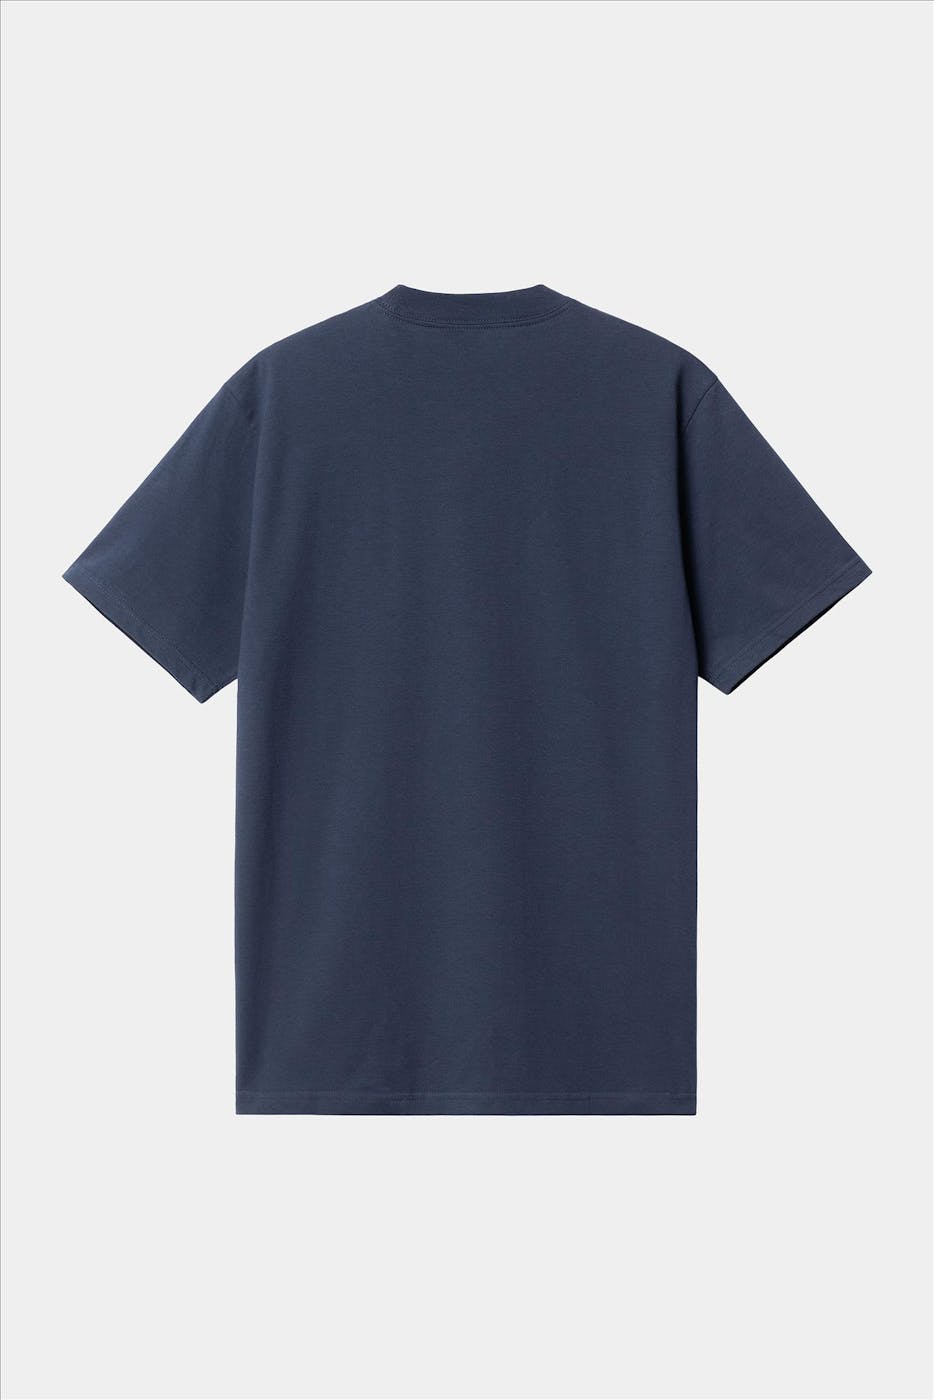 Carhartt WIP - Donkerblauwe Dream Factory T-shirt